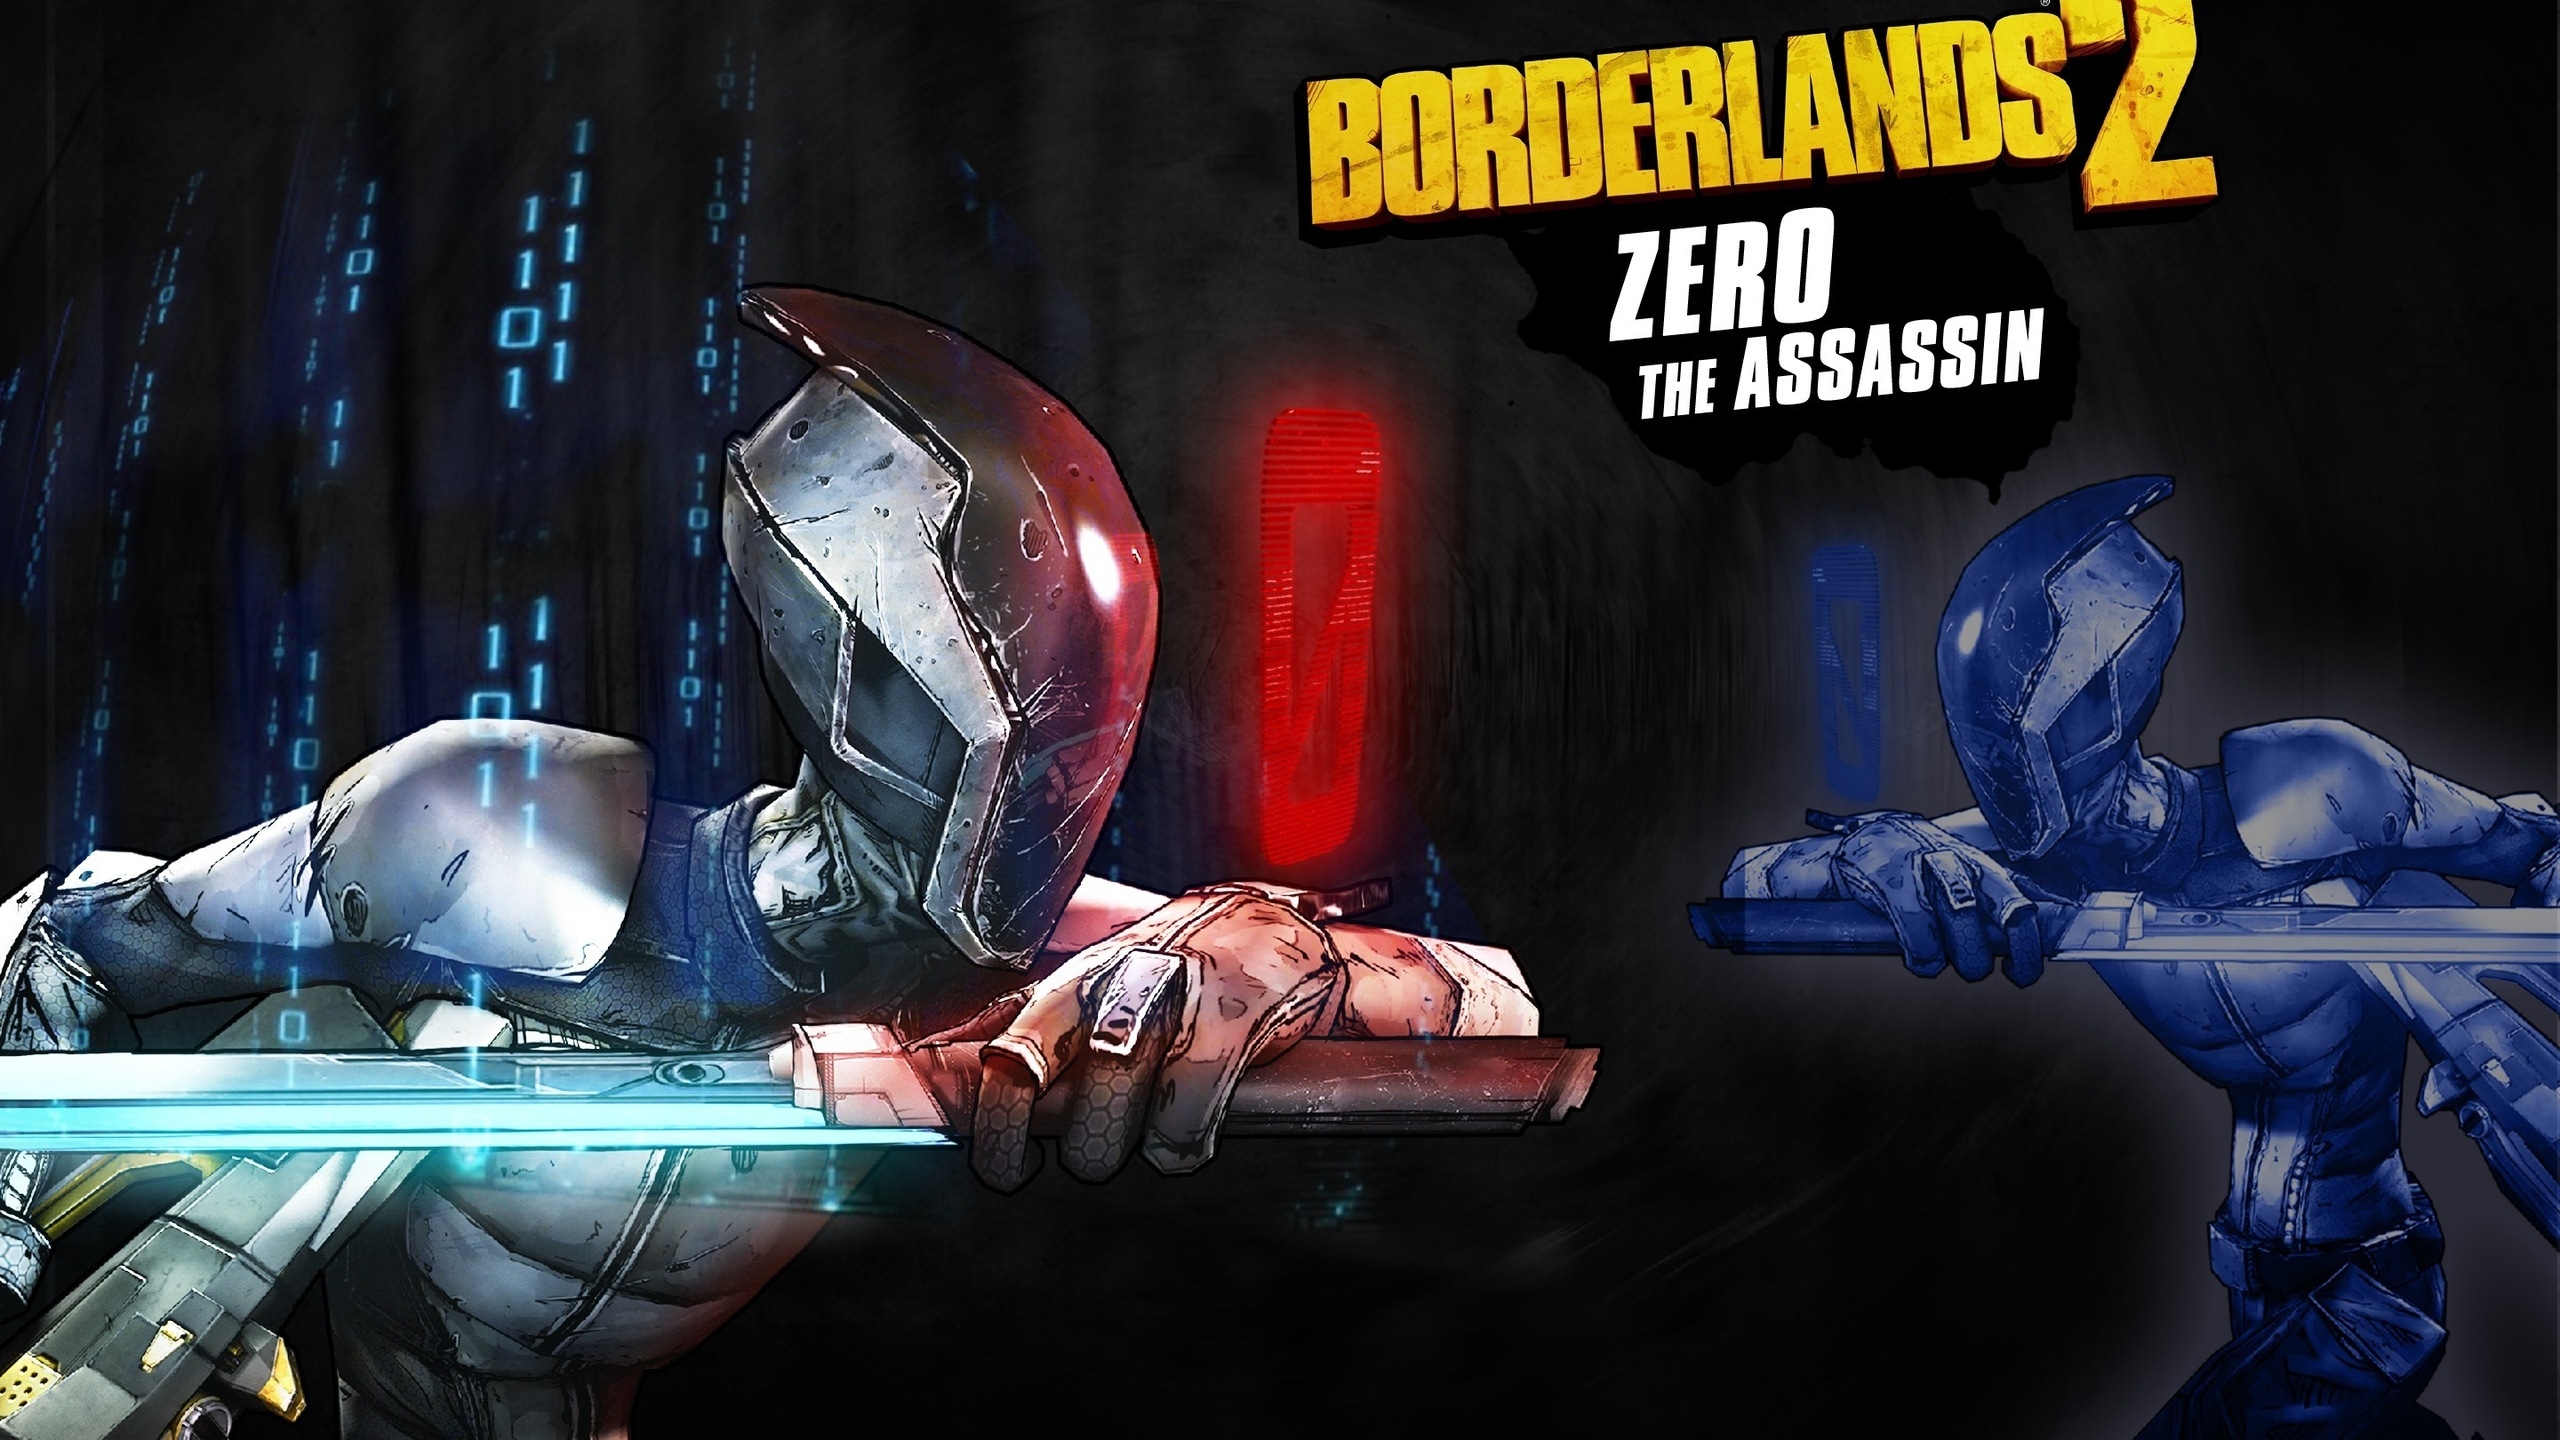 Zero The Assassin Borderlands 2  for 2560x1440 HDTV resolution